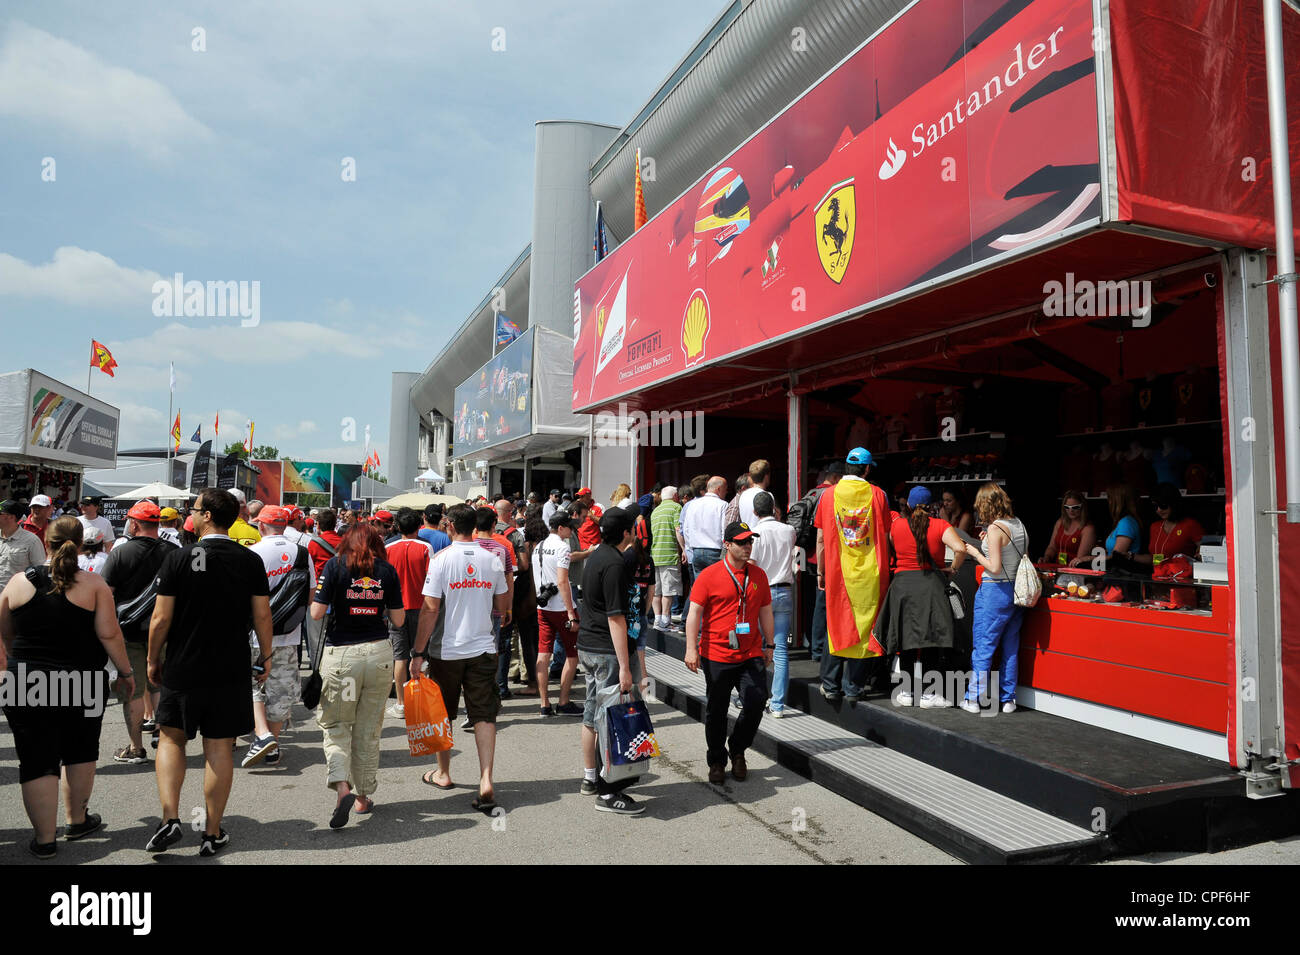 offizielle Ferrari Formel 1 Merchandise verkauft Stand, während der Formel 1 Grand Prix von Spanien auf dem Circuit de Catalunya in M Stockfoto